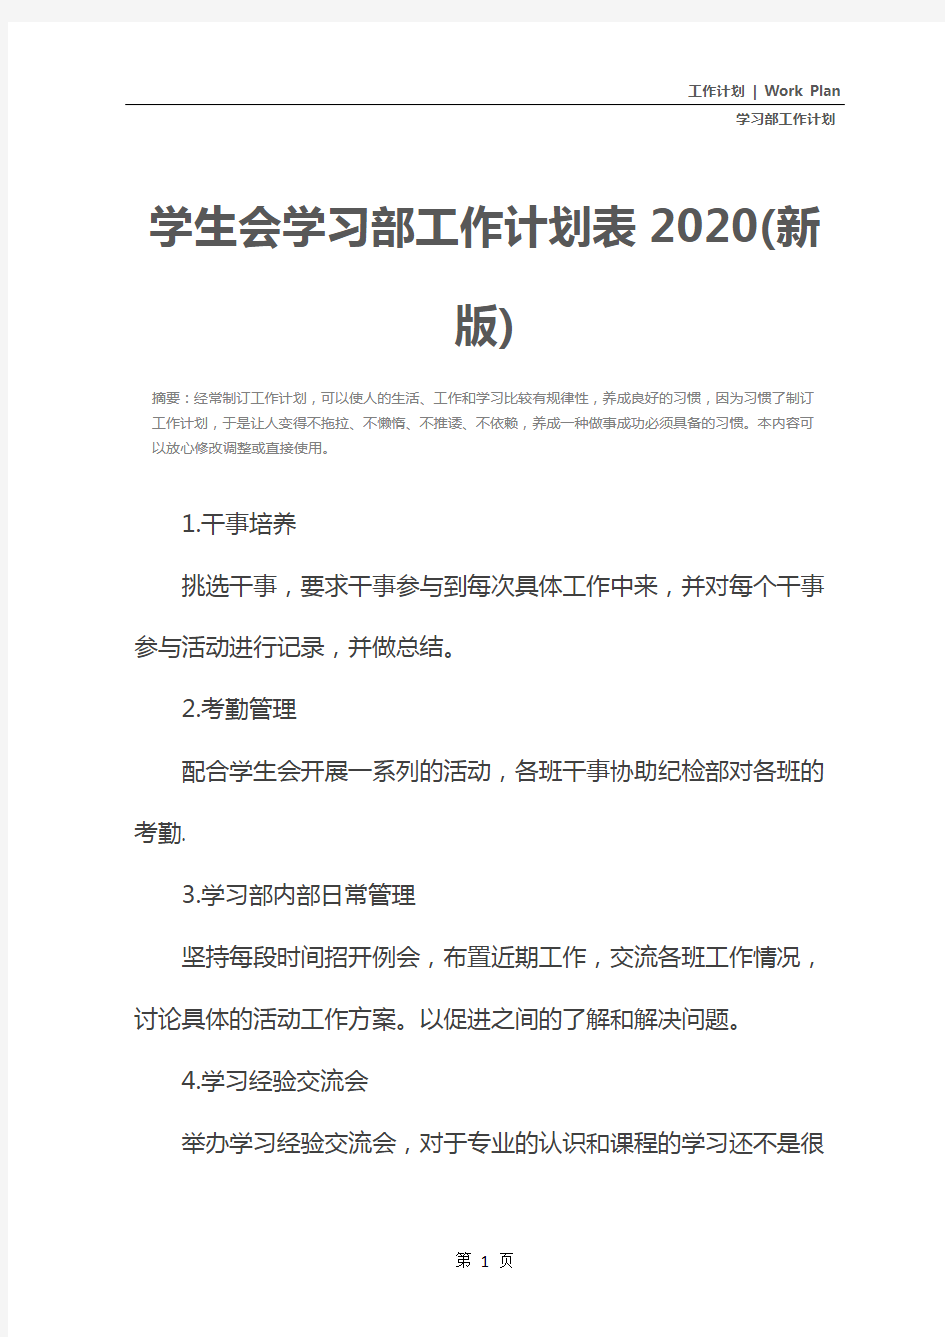 学生会学习部工作计划表2020(新版)